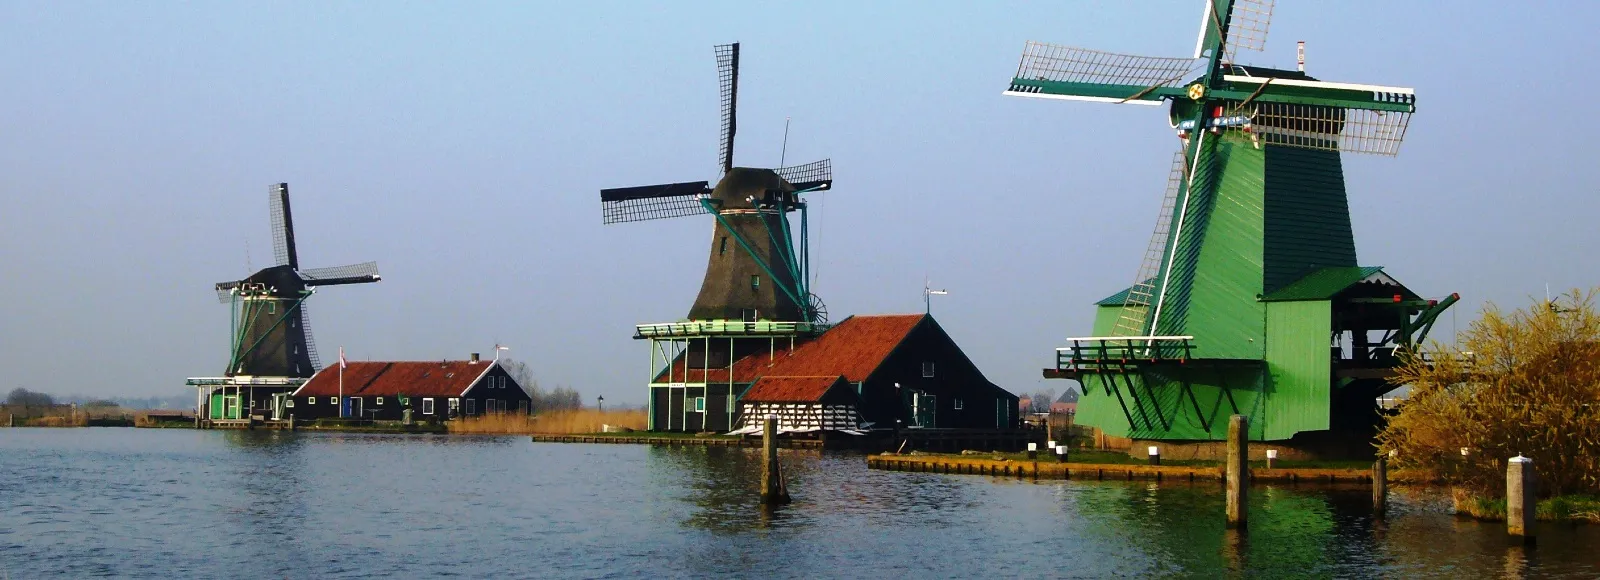 L’Olanda in festa per i mulini a vento, che furono d’aiuto per i messaggi cifrati durante la guerra